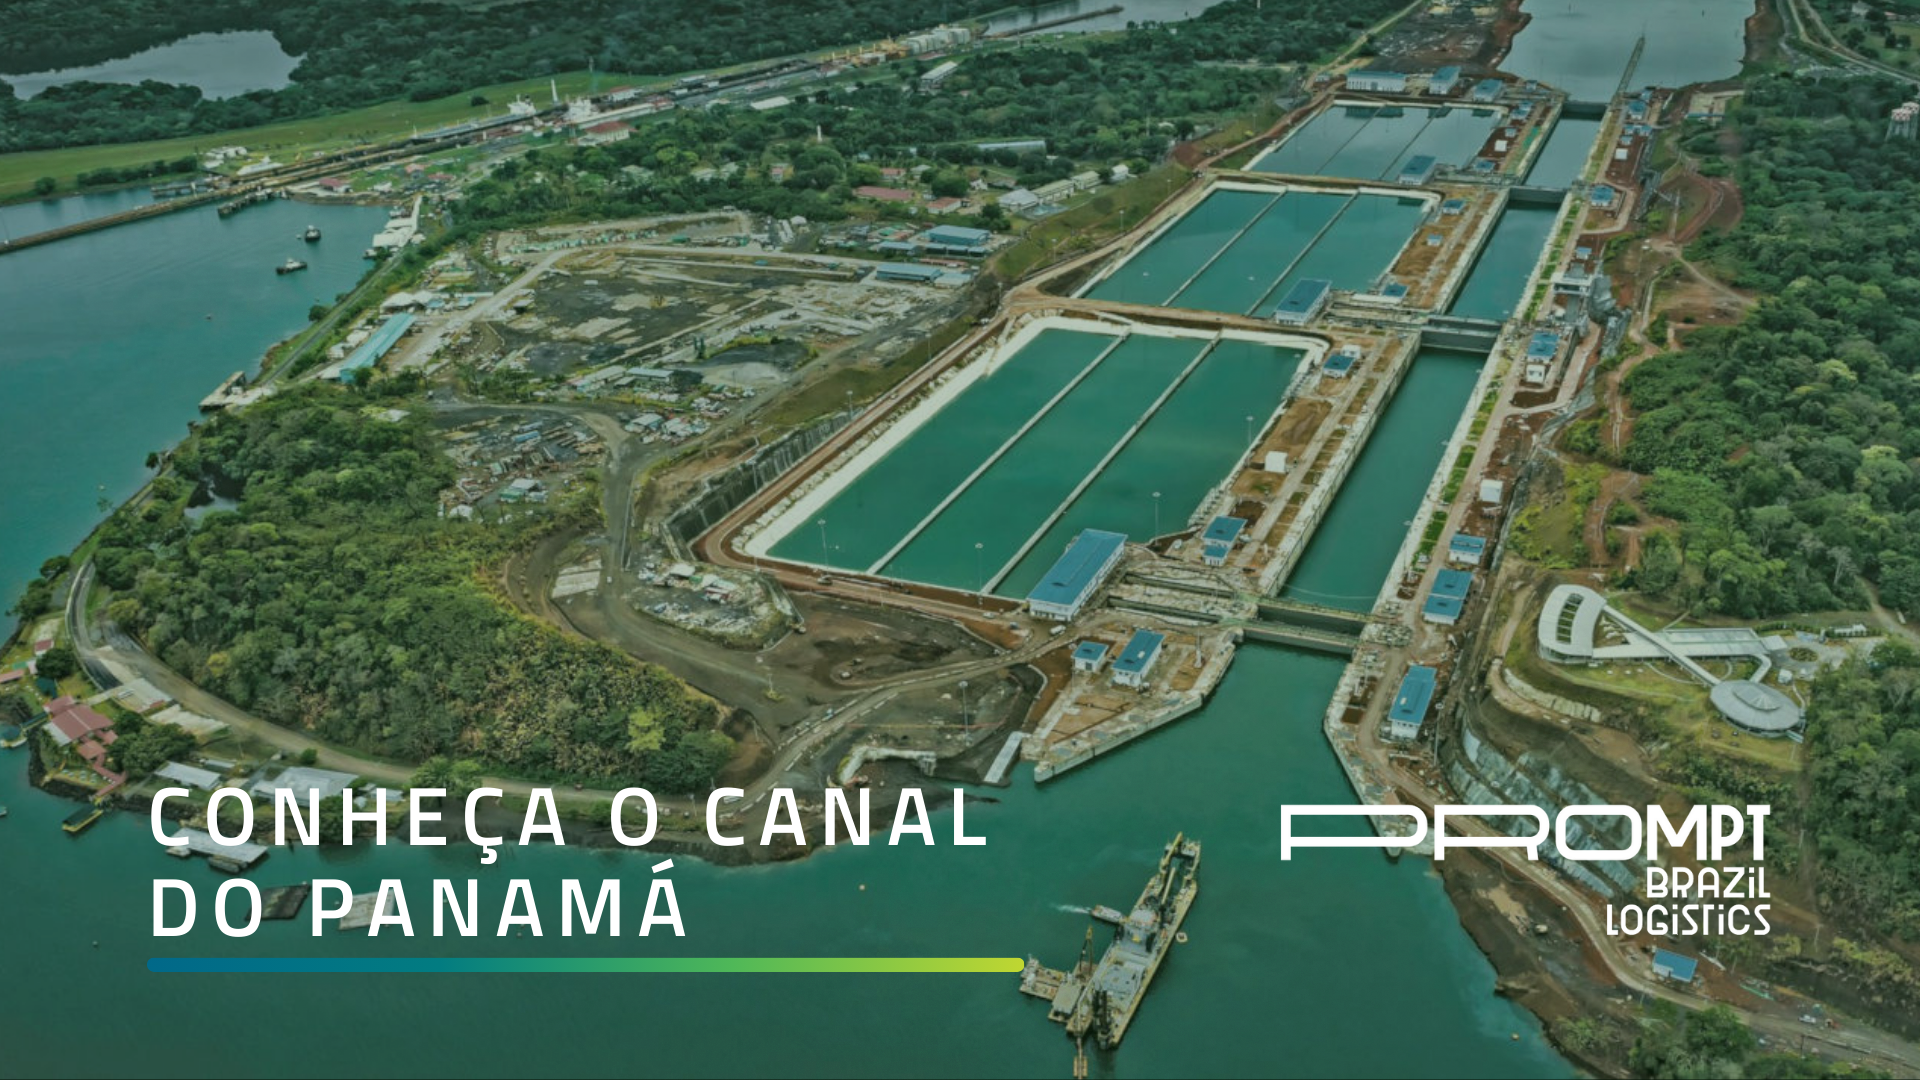 Conheça o Canal do Panamá nesse artigo exclusivo da Prompt.